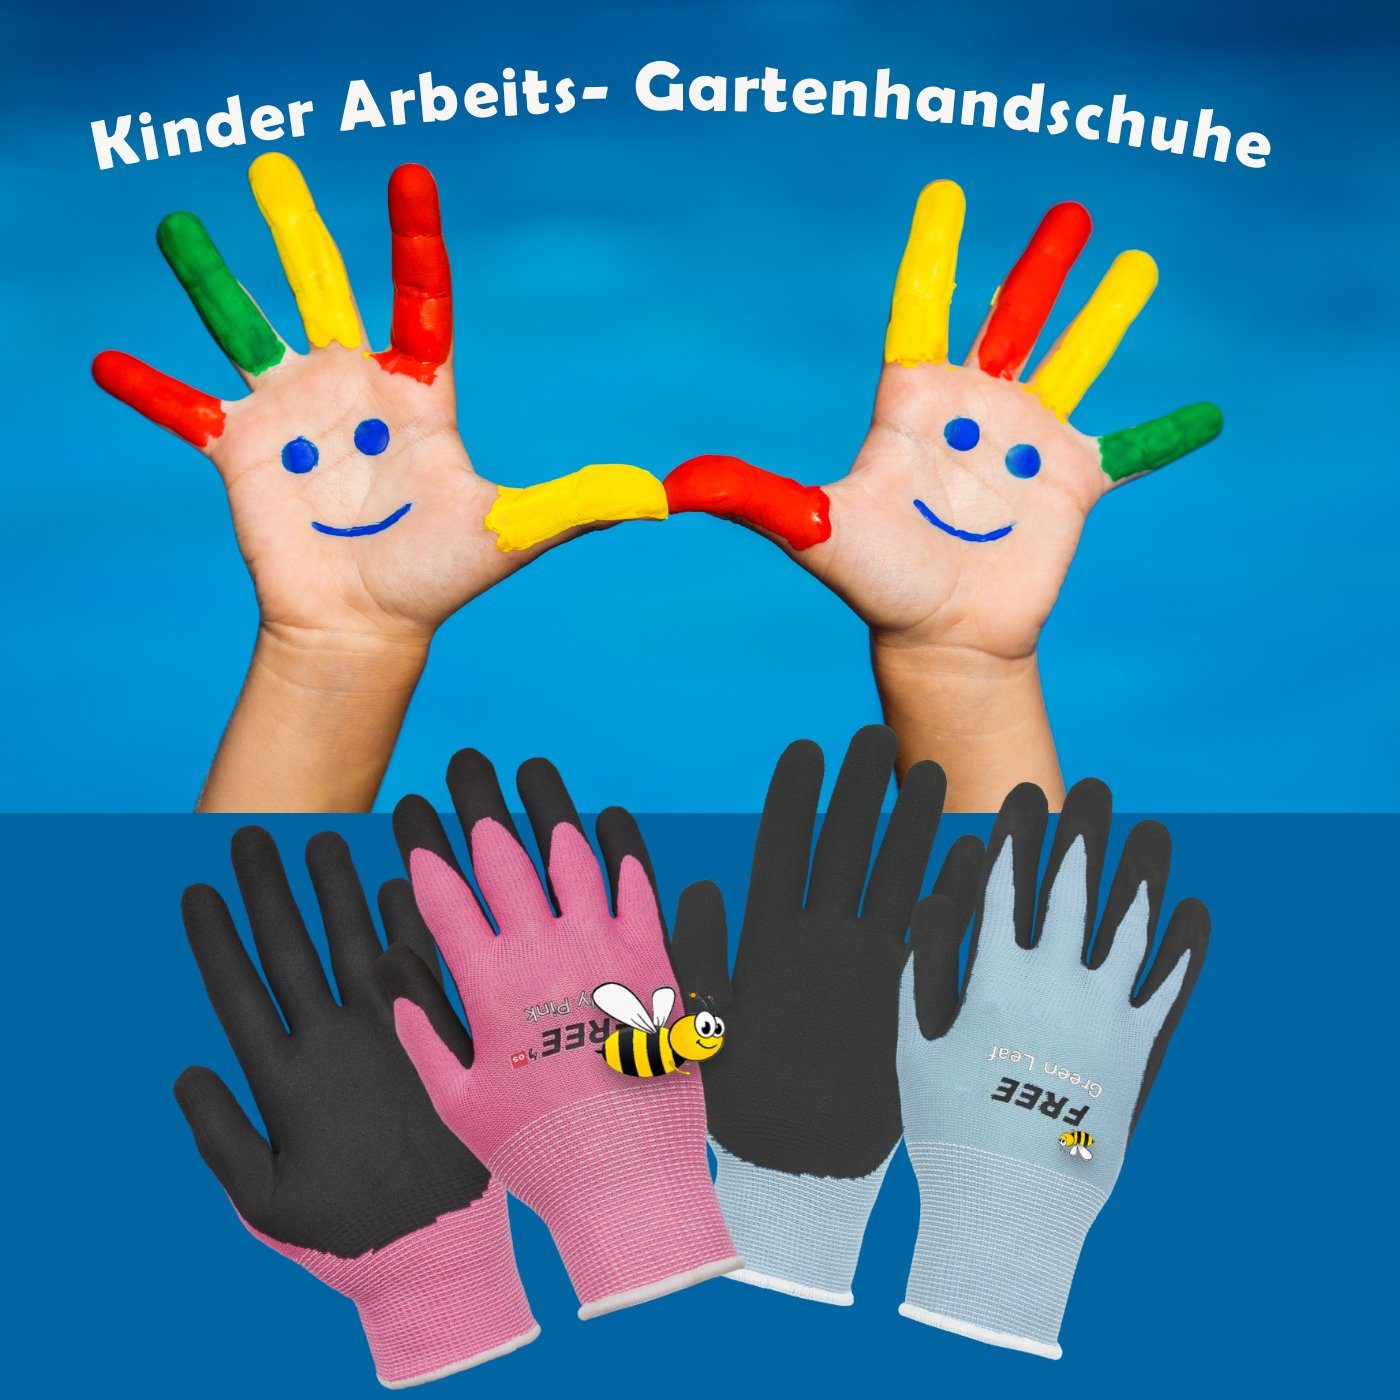 5 1198830) für GUARD in kleine wasserabweisend Gartenhandschuhe pink Gärtner Kinder-Gartenhandschuhe -(Art